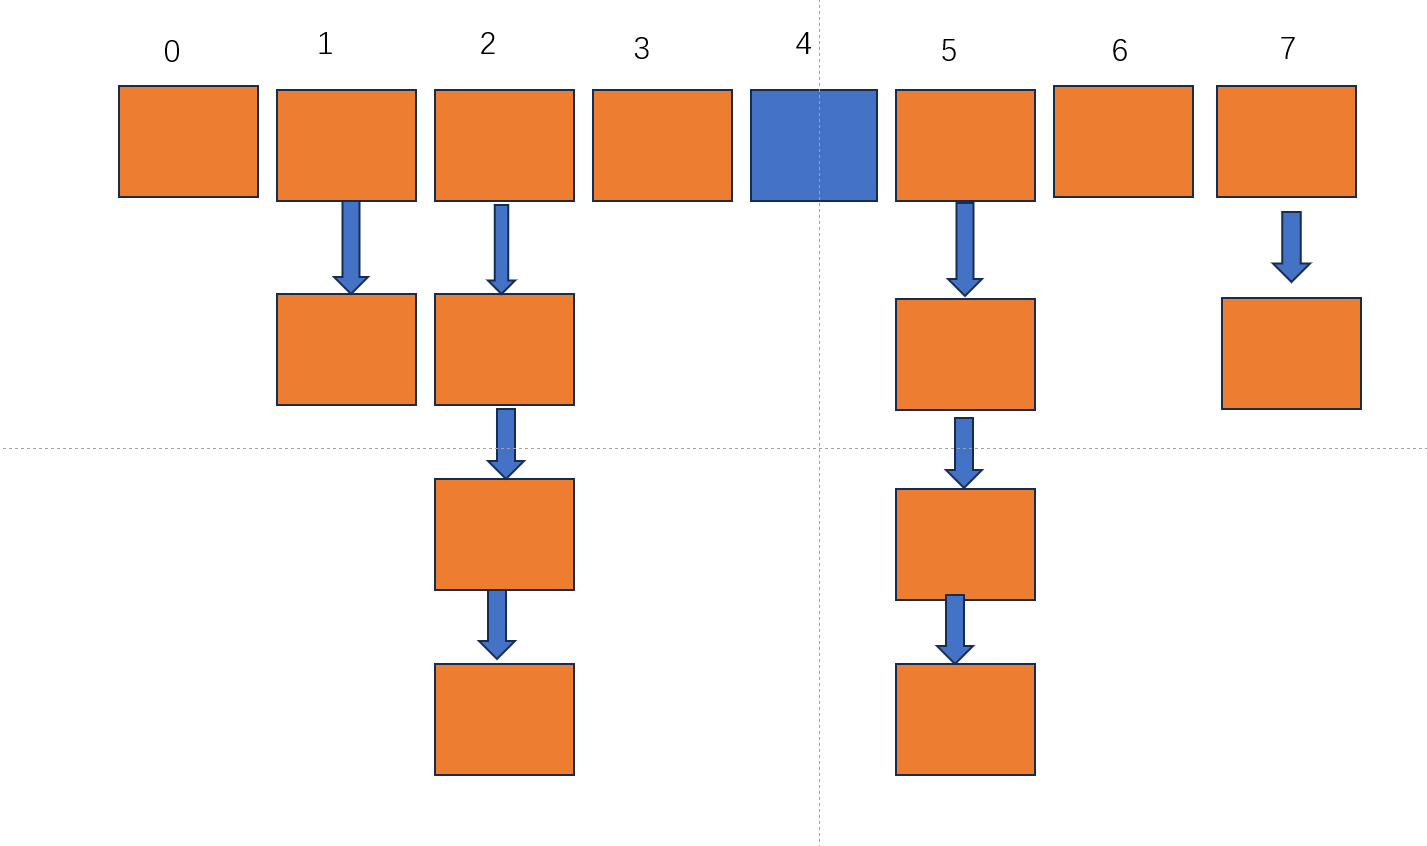                         数据结构之散列表(数组和链表的结合)的读写操作(Java)_数组_07